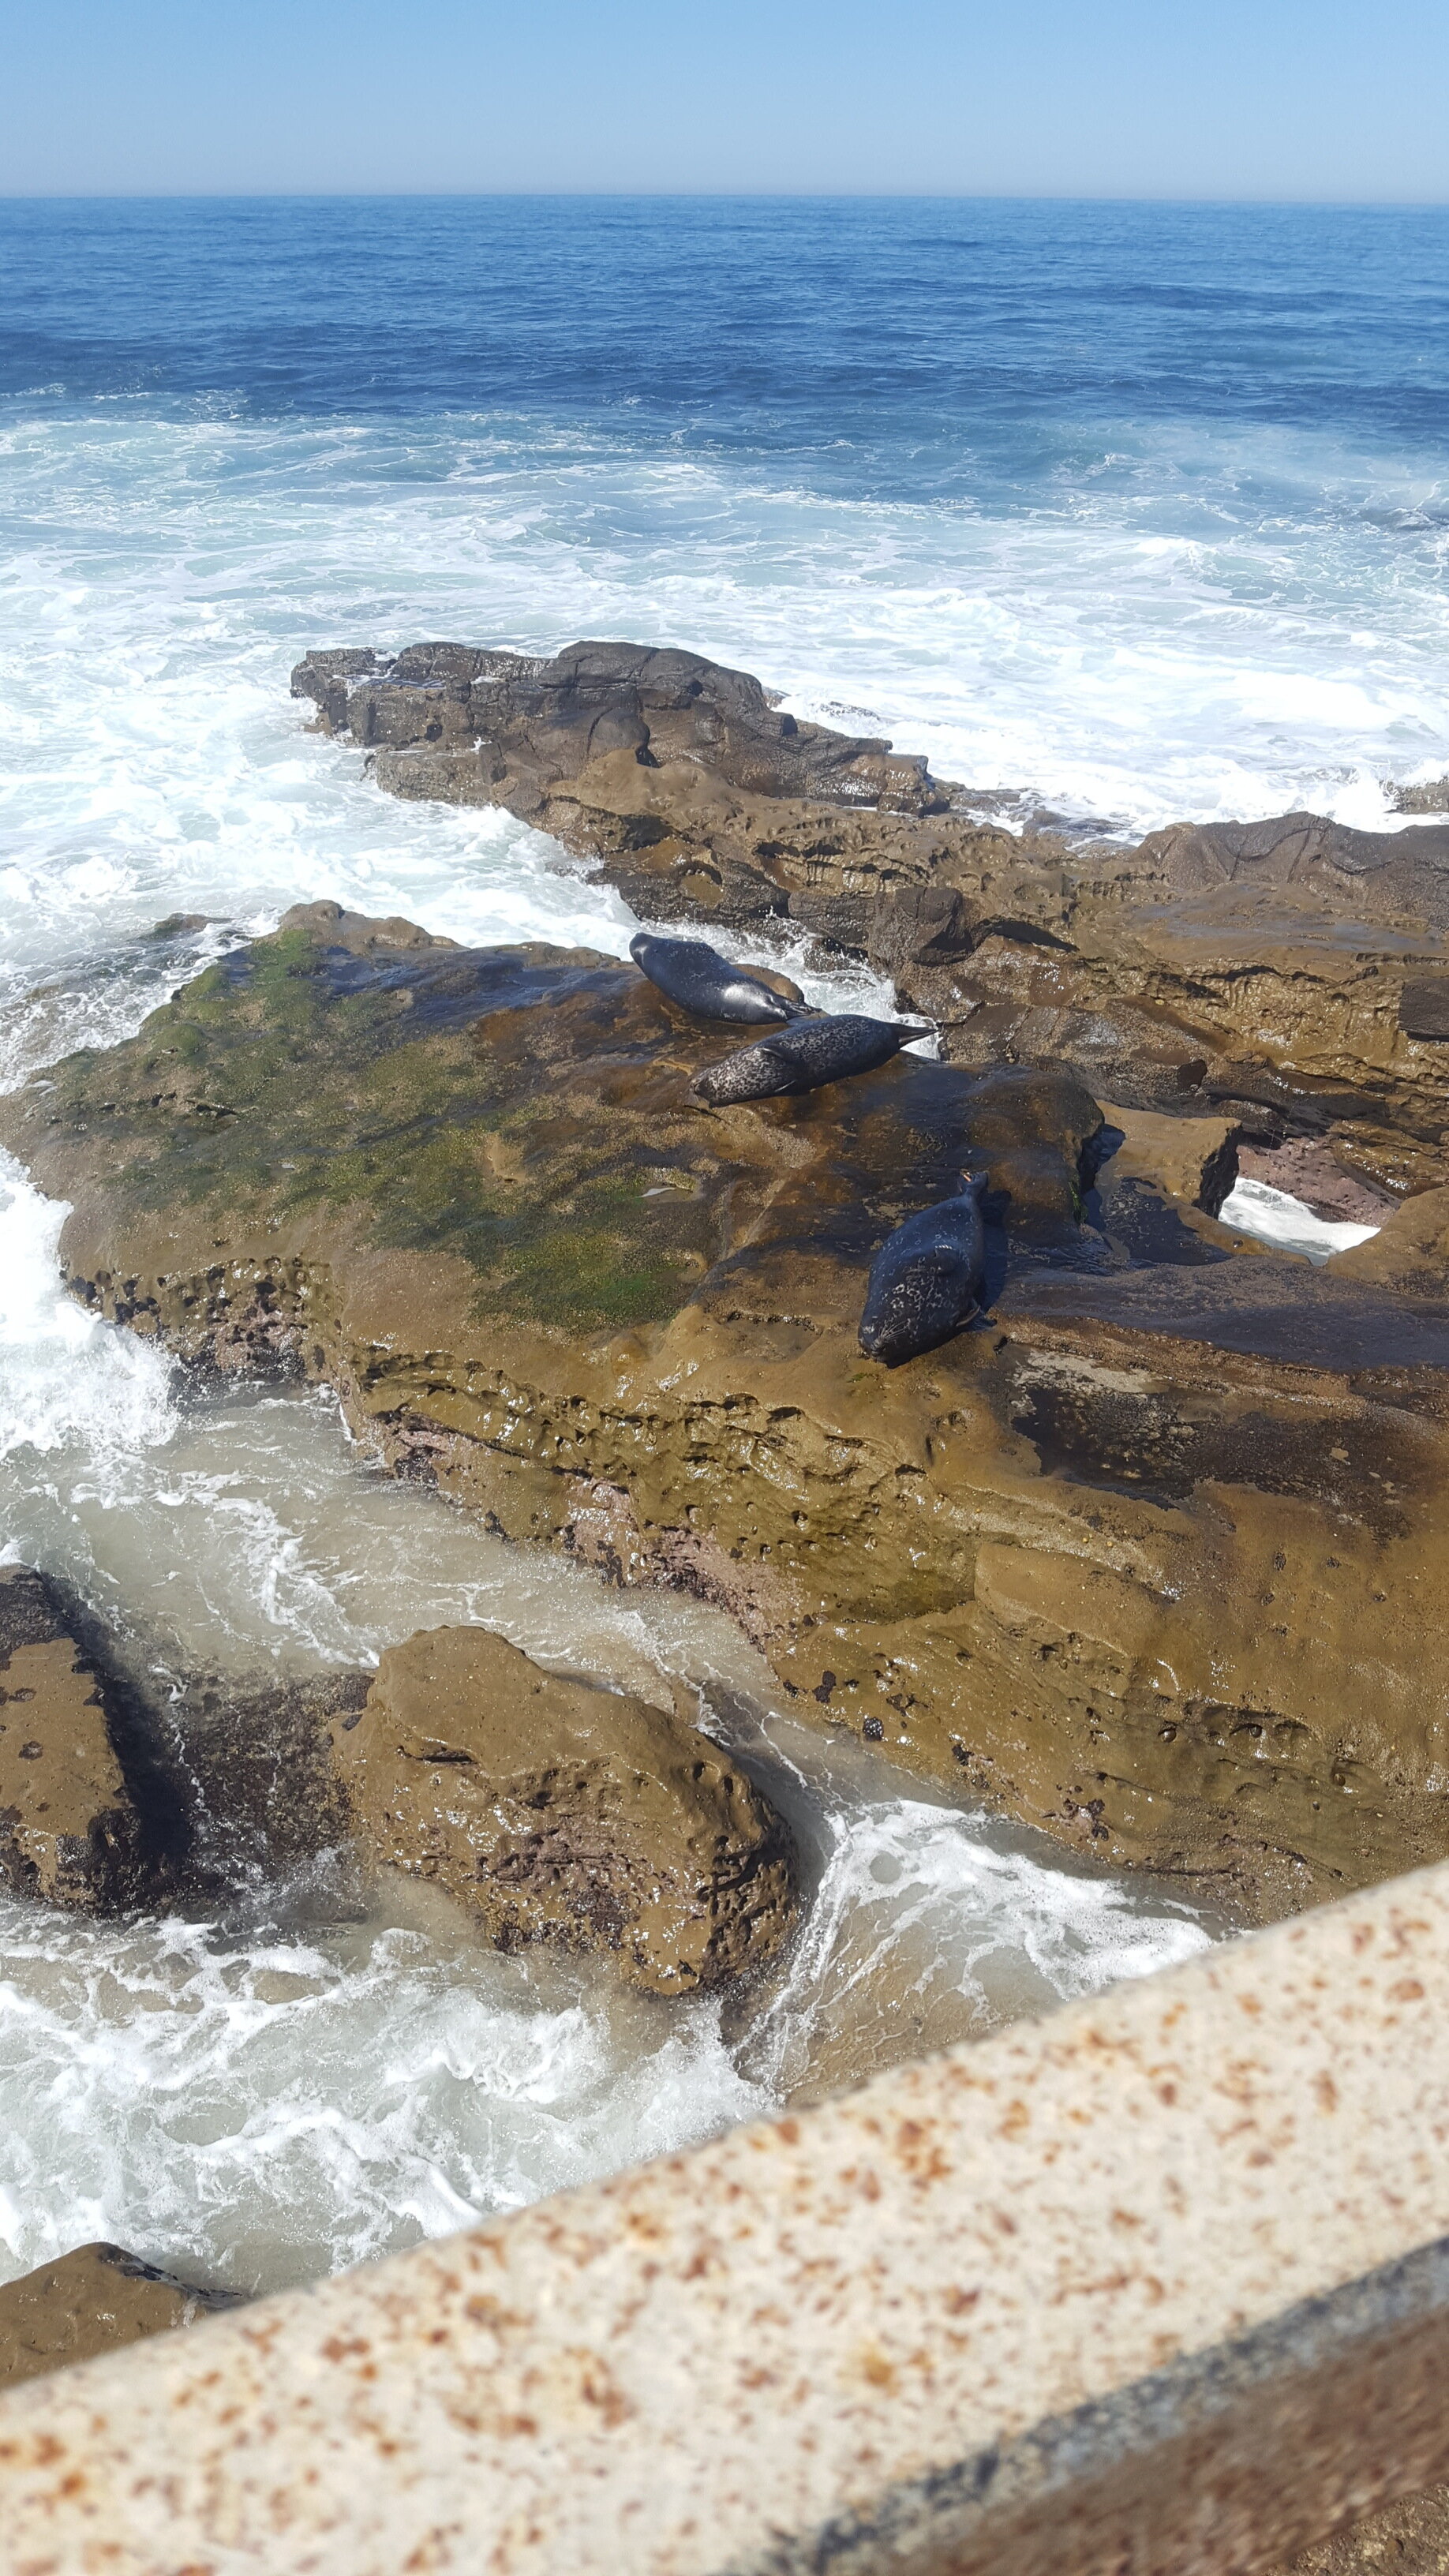 Lots of seals here at La Jolla Cove